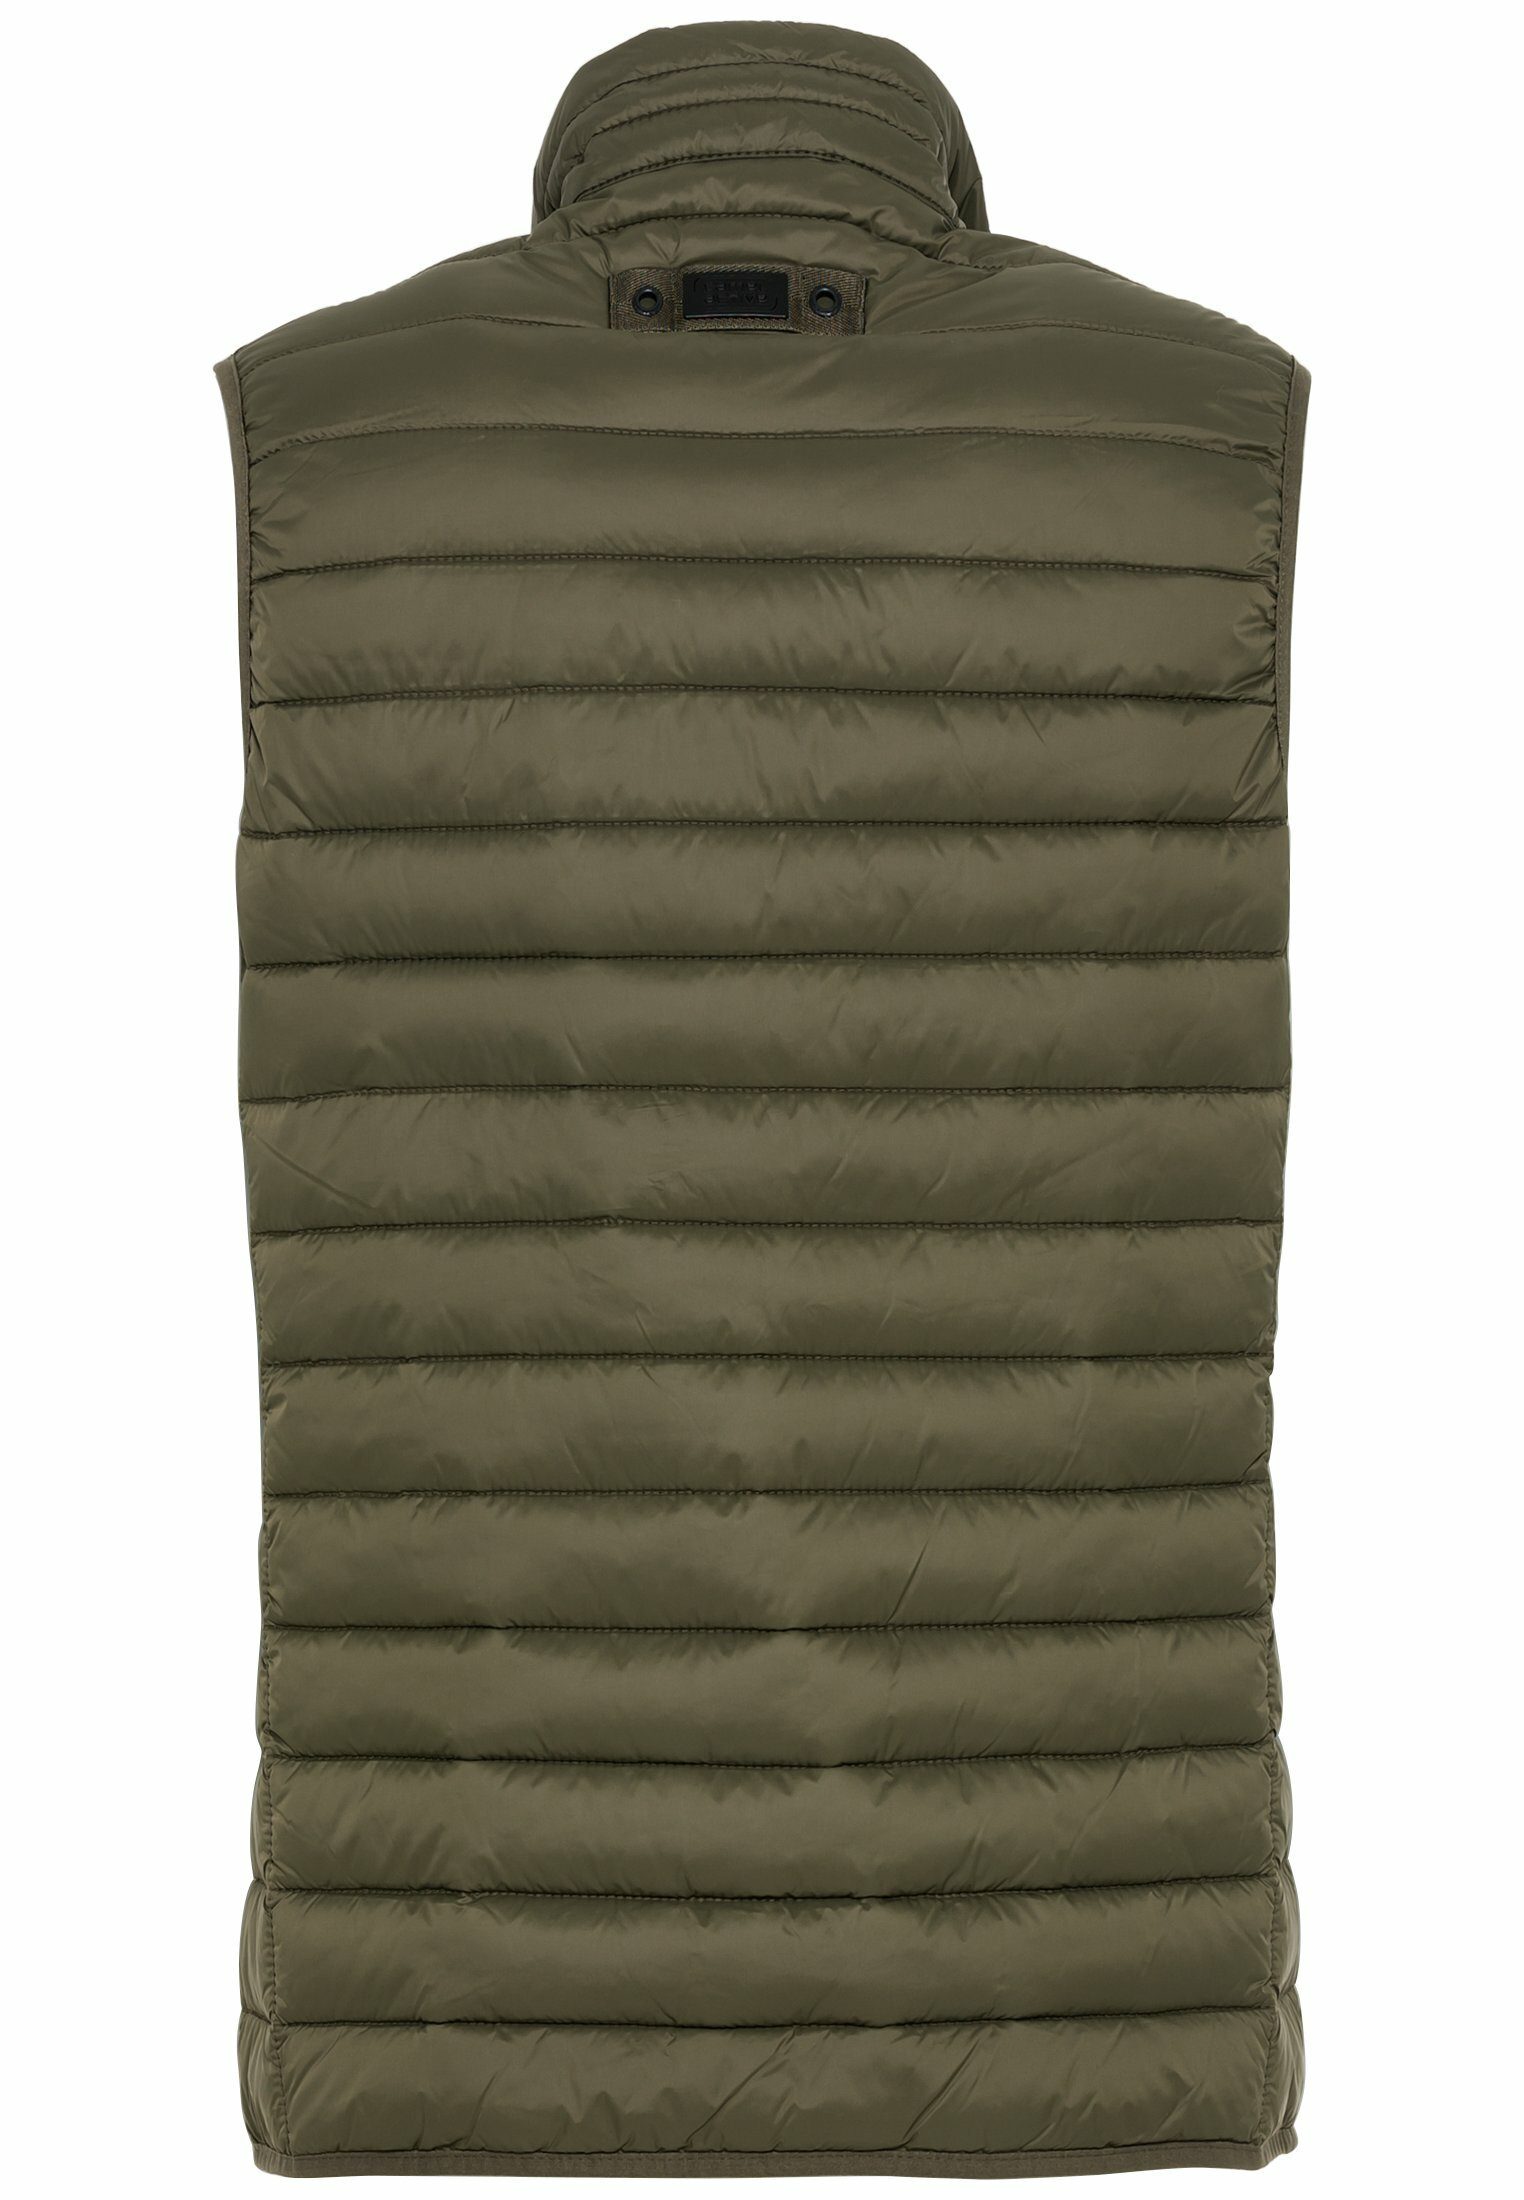 camel active Steppweste Olive-Braun Stehkragen Steppung Polyester recyceltem mit horizontaler mit aus